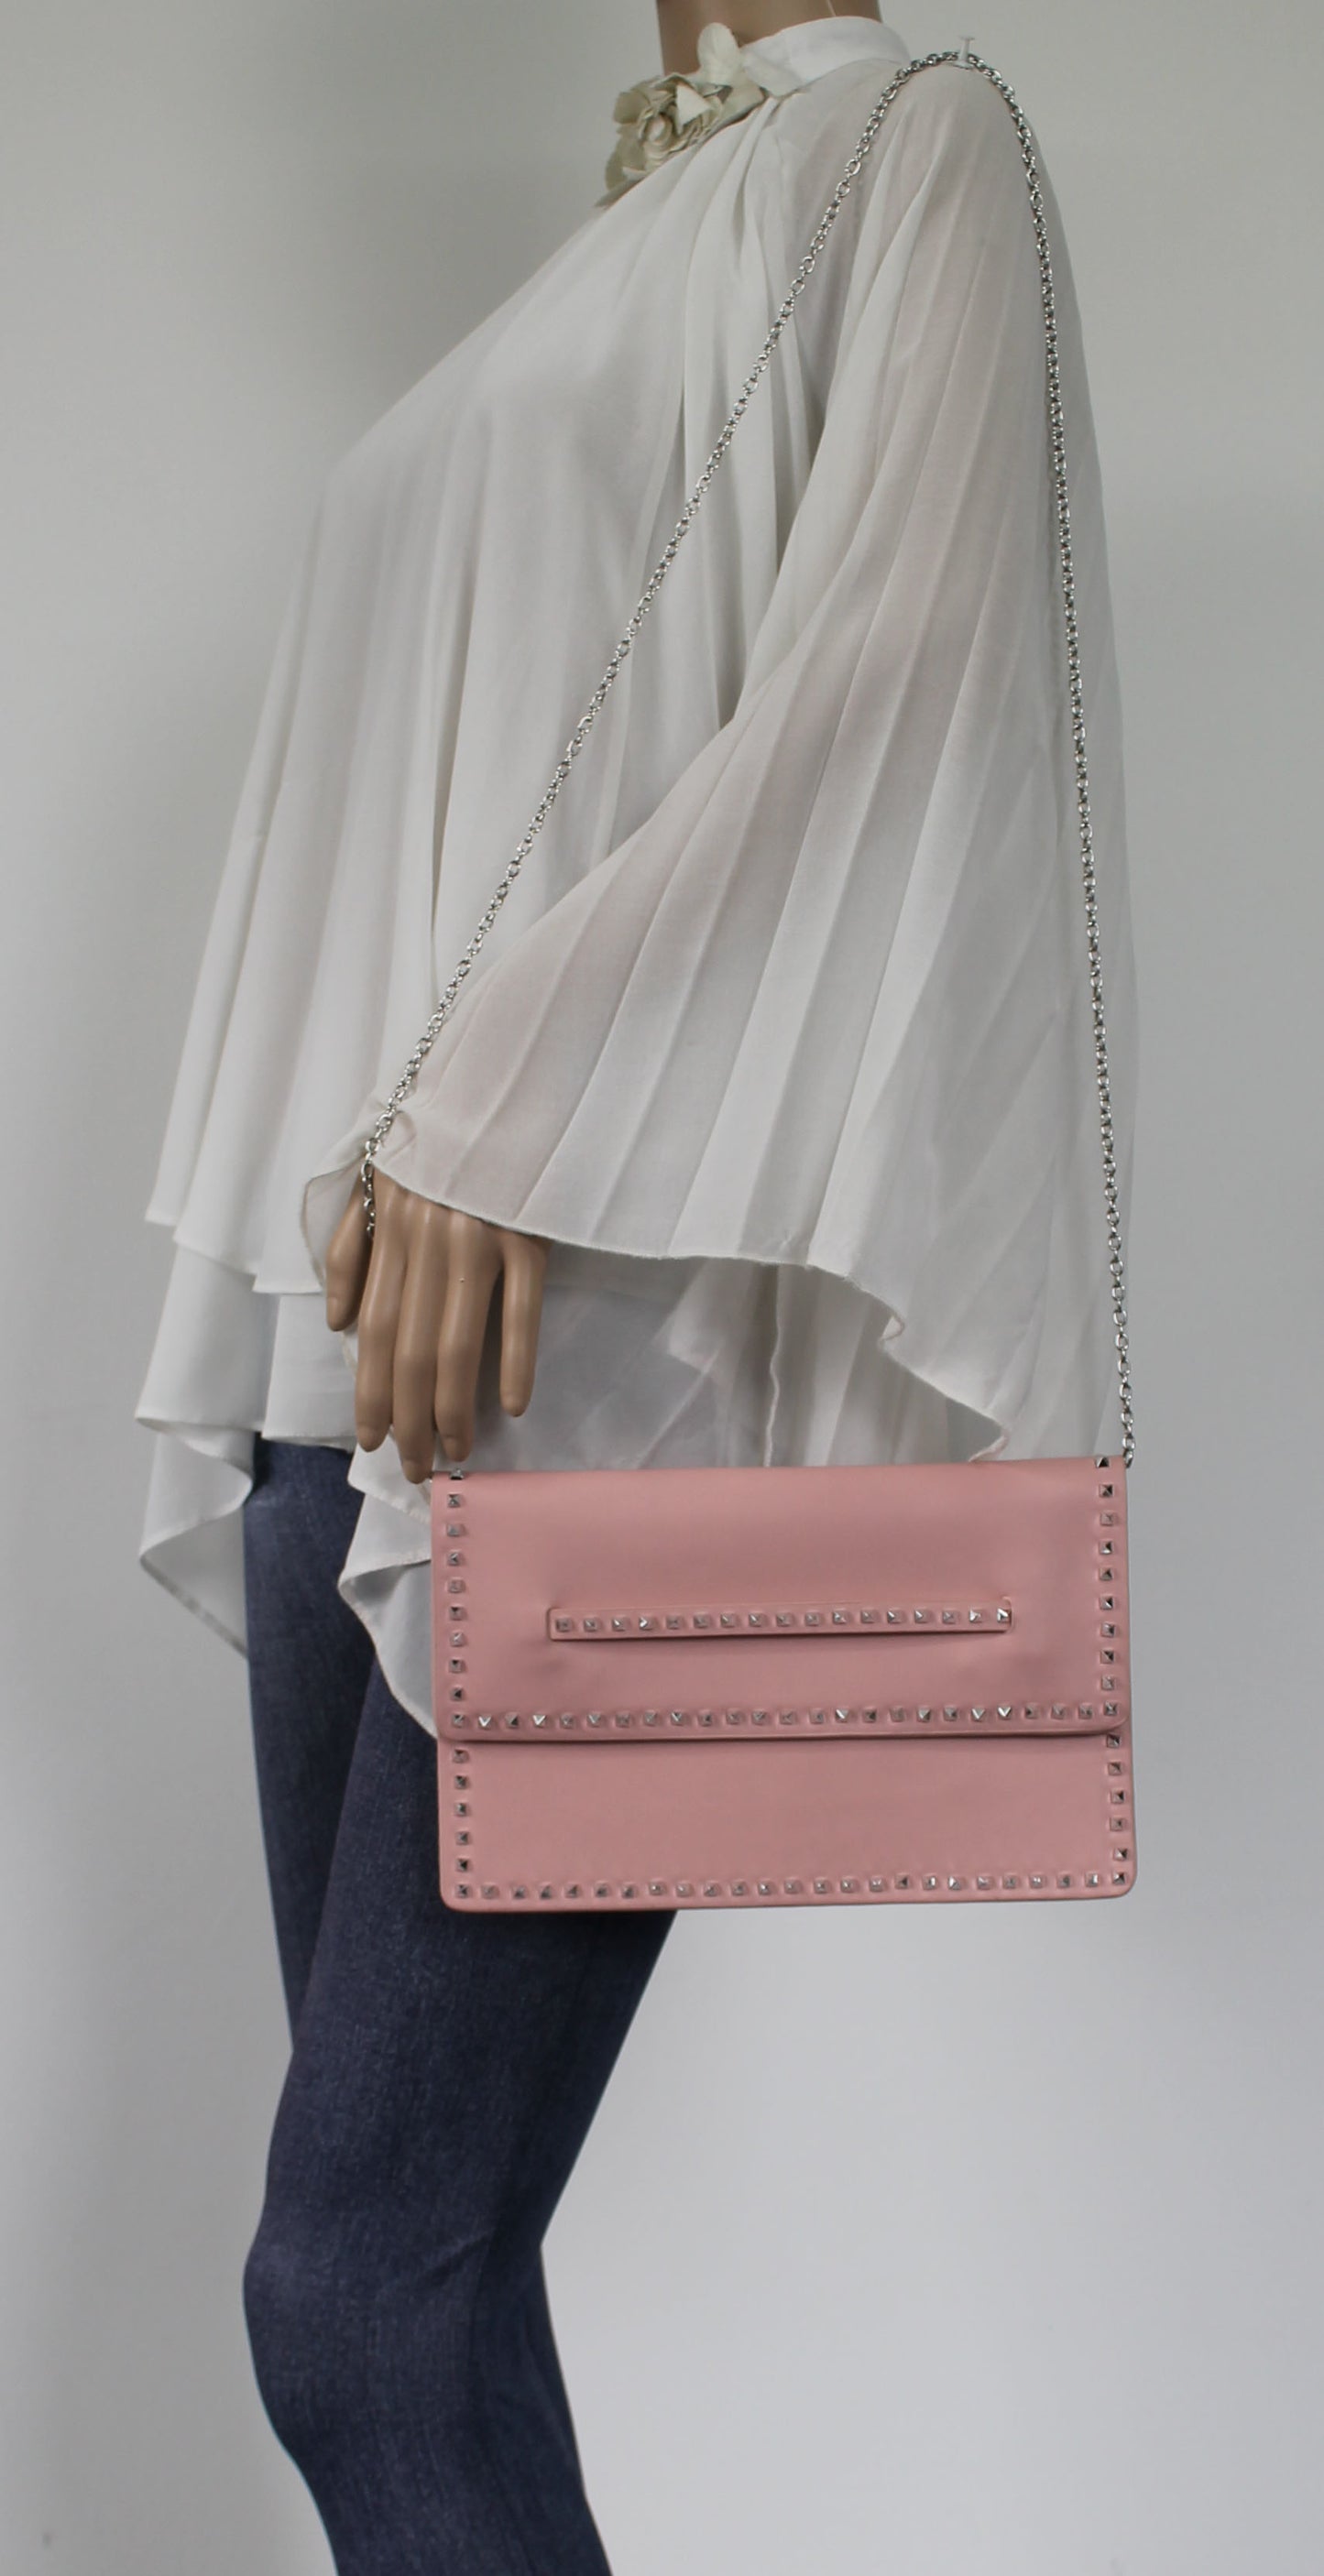 SWANKYSWANS Ciera Clutch Bag Flesh Pink Cute Cheap Clutch Bag For Weddings School and Work